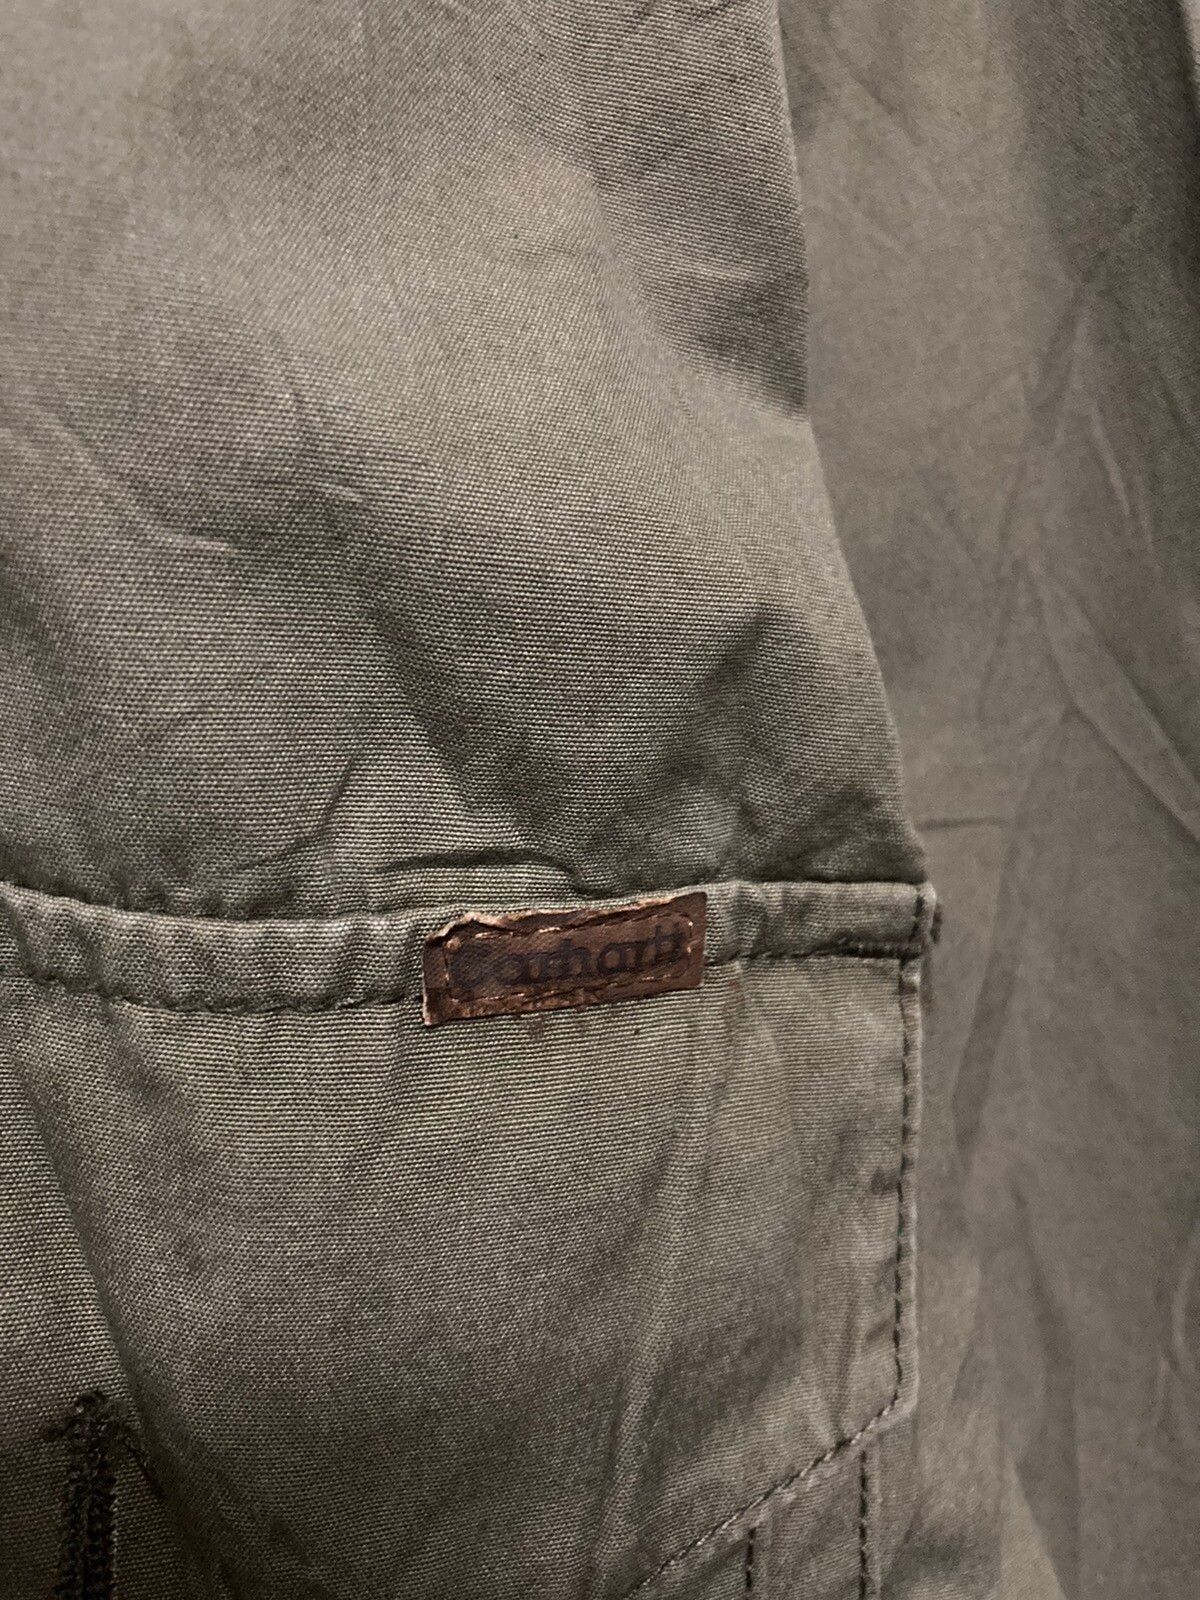 Carhartt Button Up Long Sleeve Shirt - 7